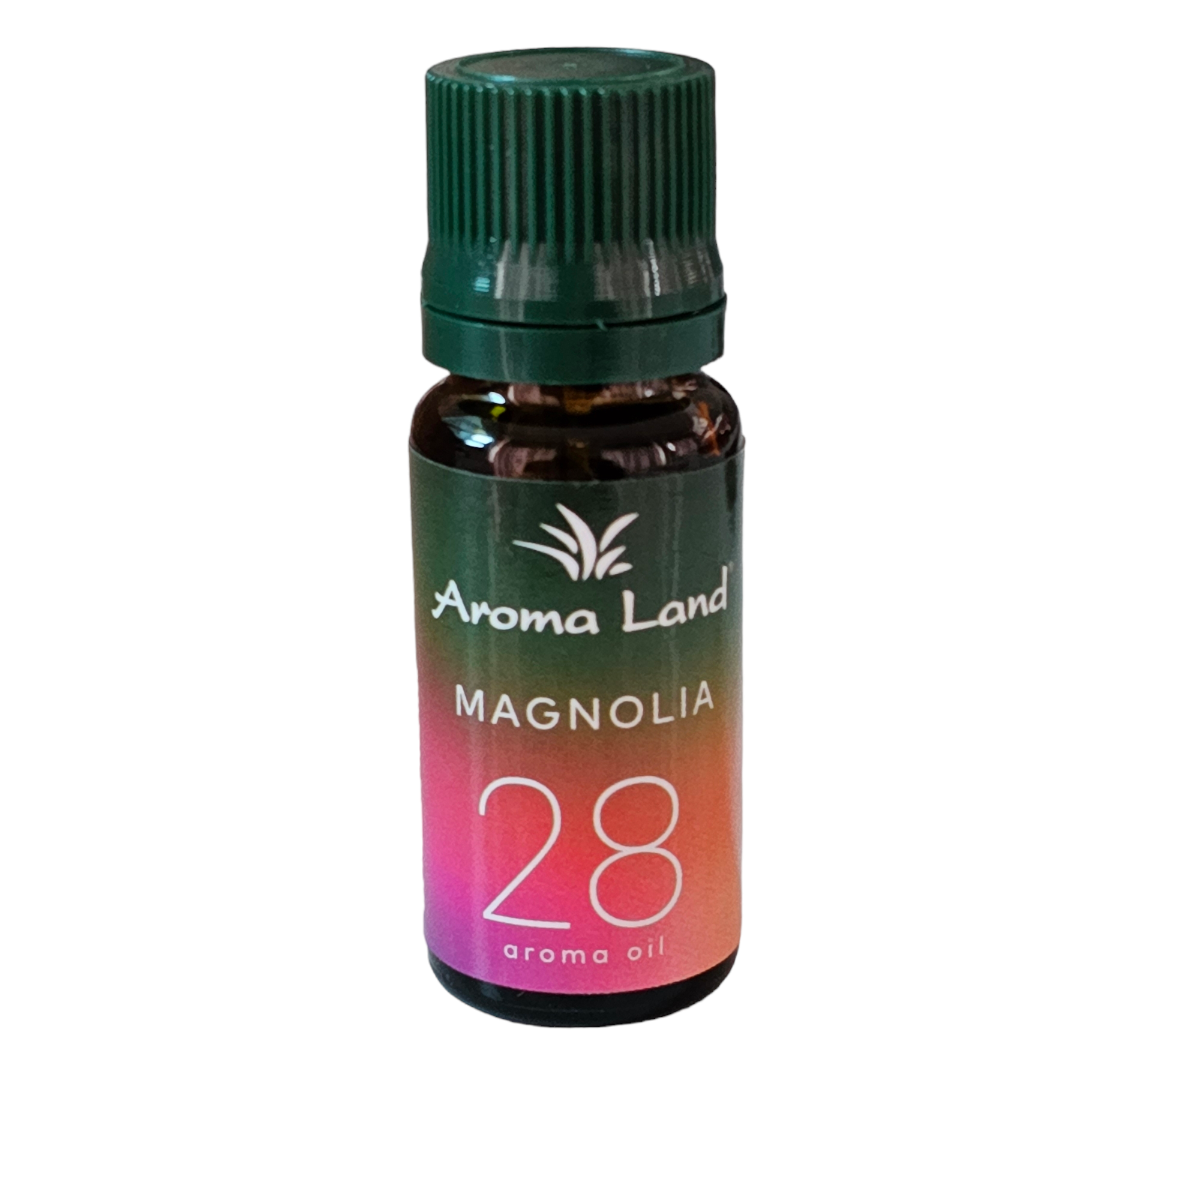 Ulei parfumat pentru aromoterapie Magnolia 28